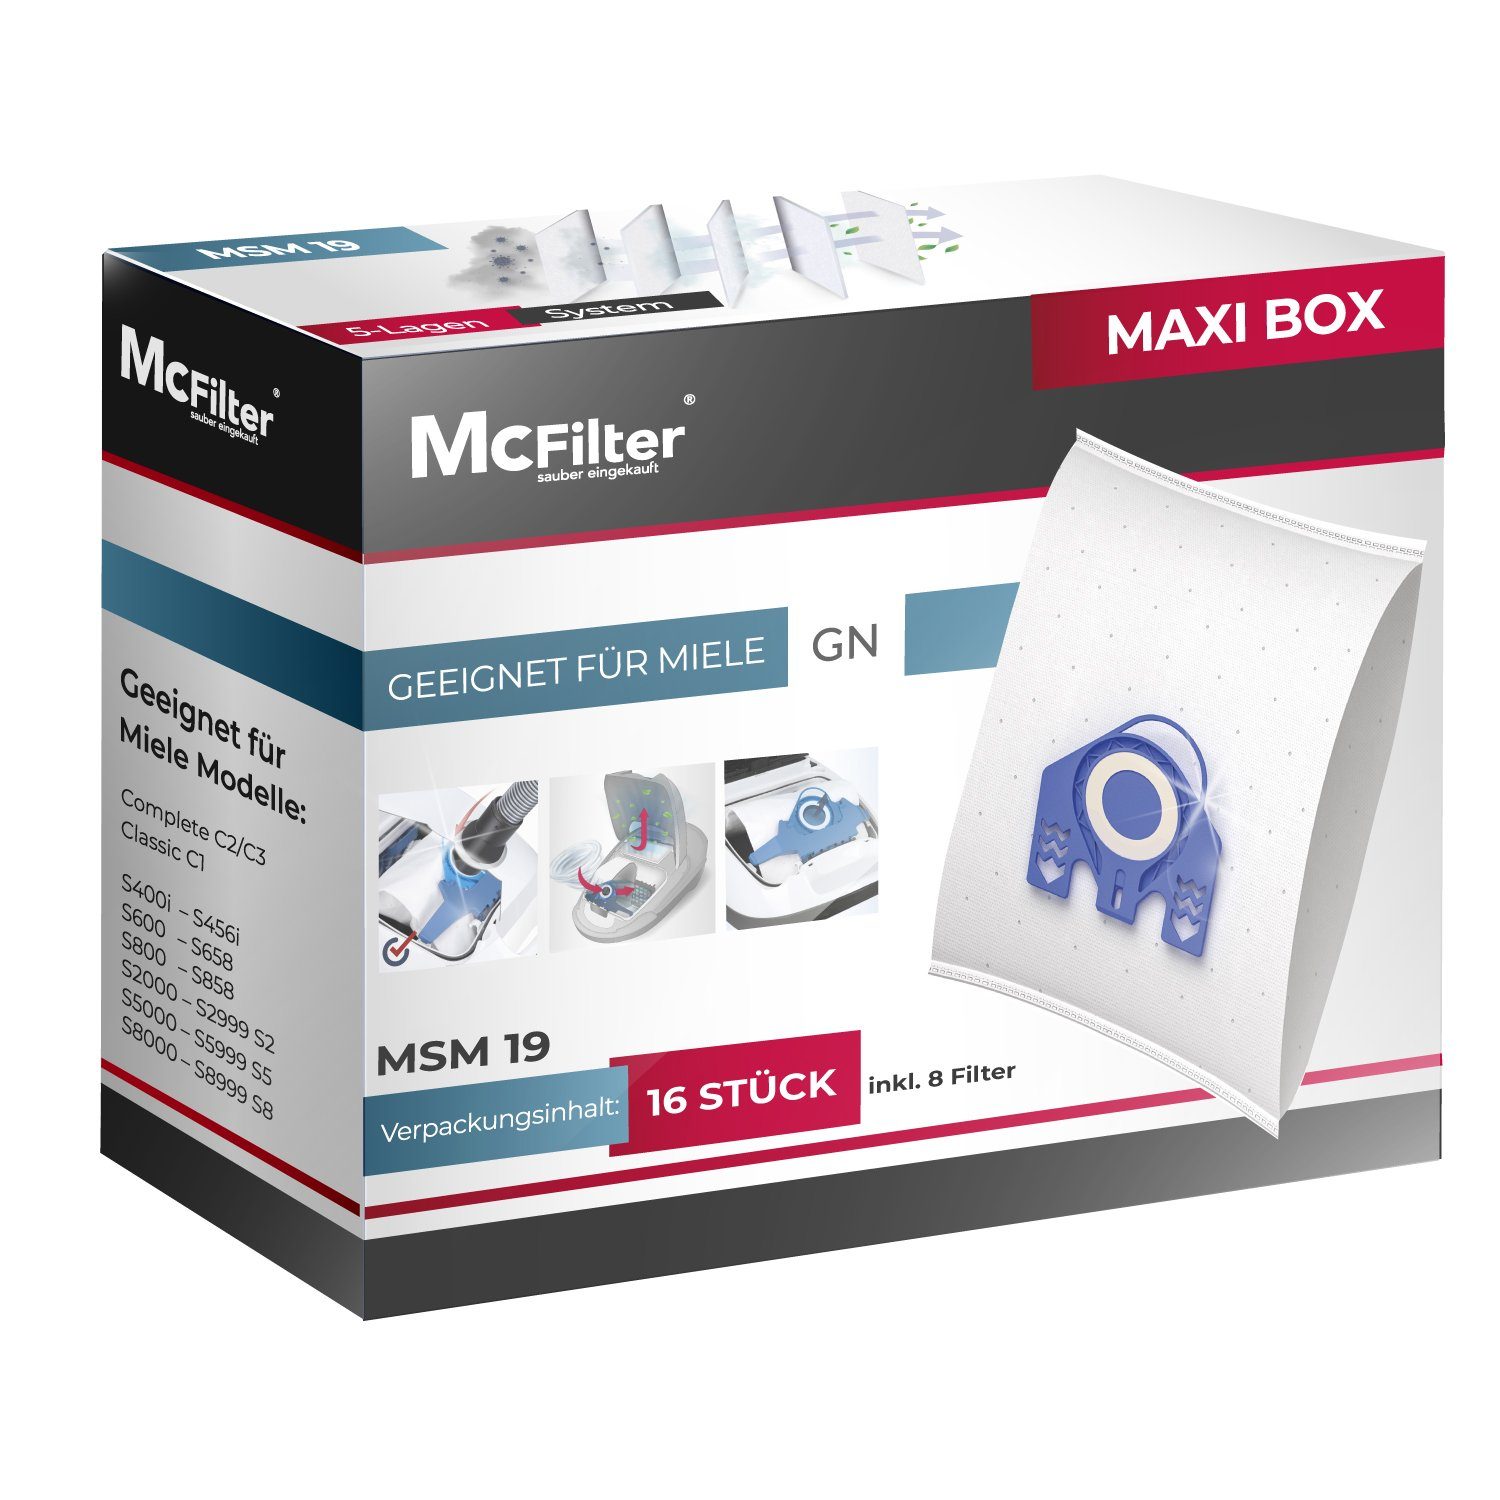 McFilter Staubsaugerbeutel >MAXI BOX< (16+8), passend für Miele C3 Cat & Dog - SGEF3 Staubsauger, inkl. 8 Filter, 16 St., Top Alternative zu 9917730, wie Miele 10408410